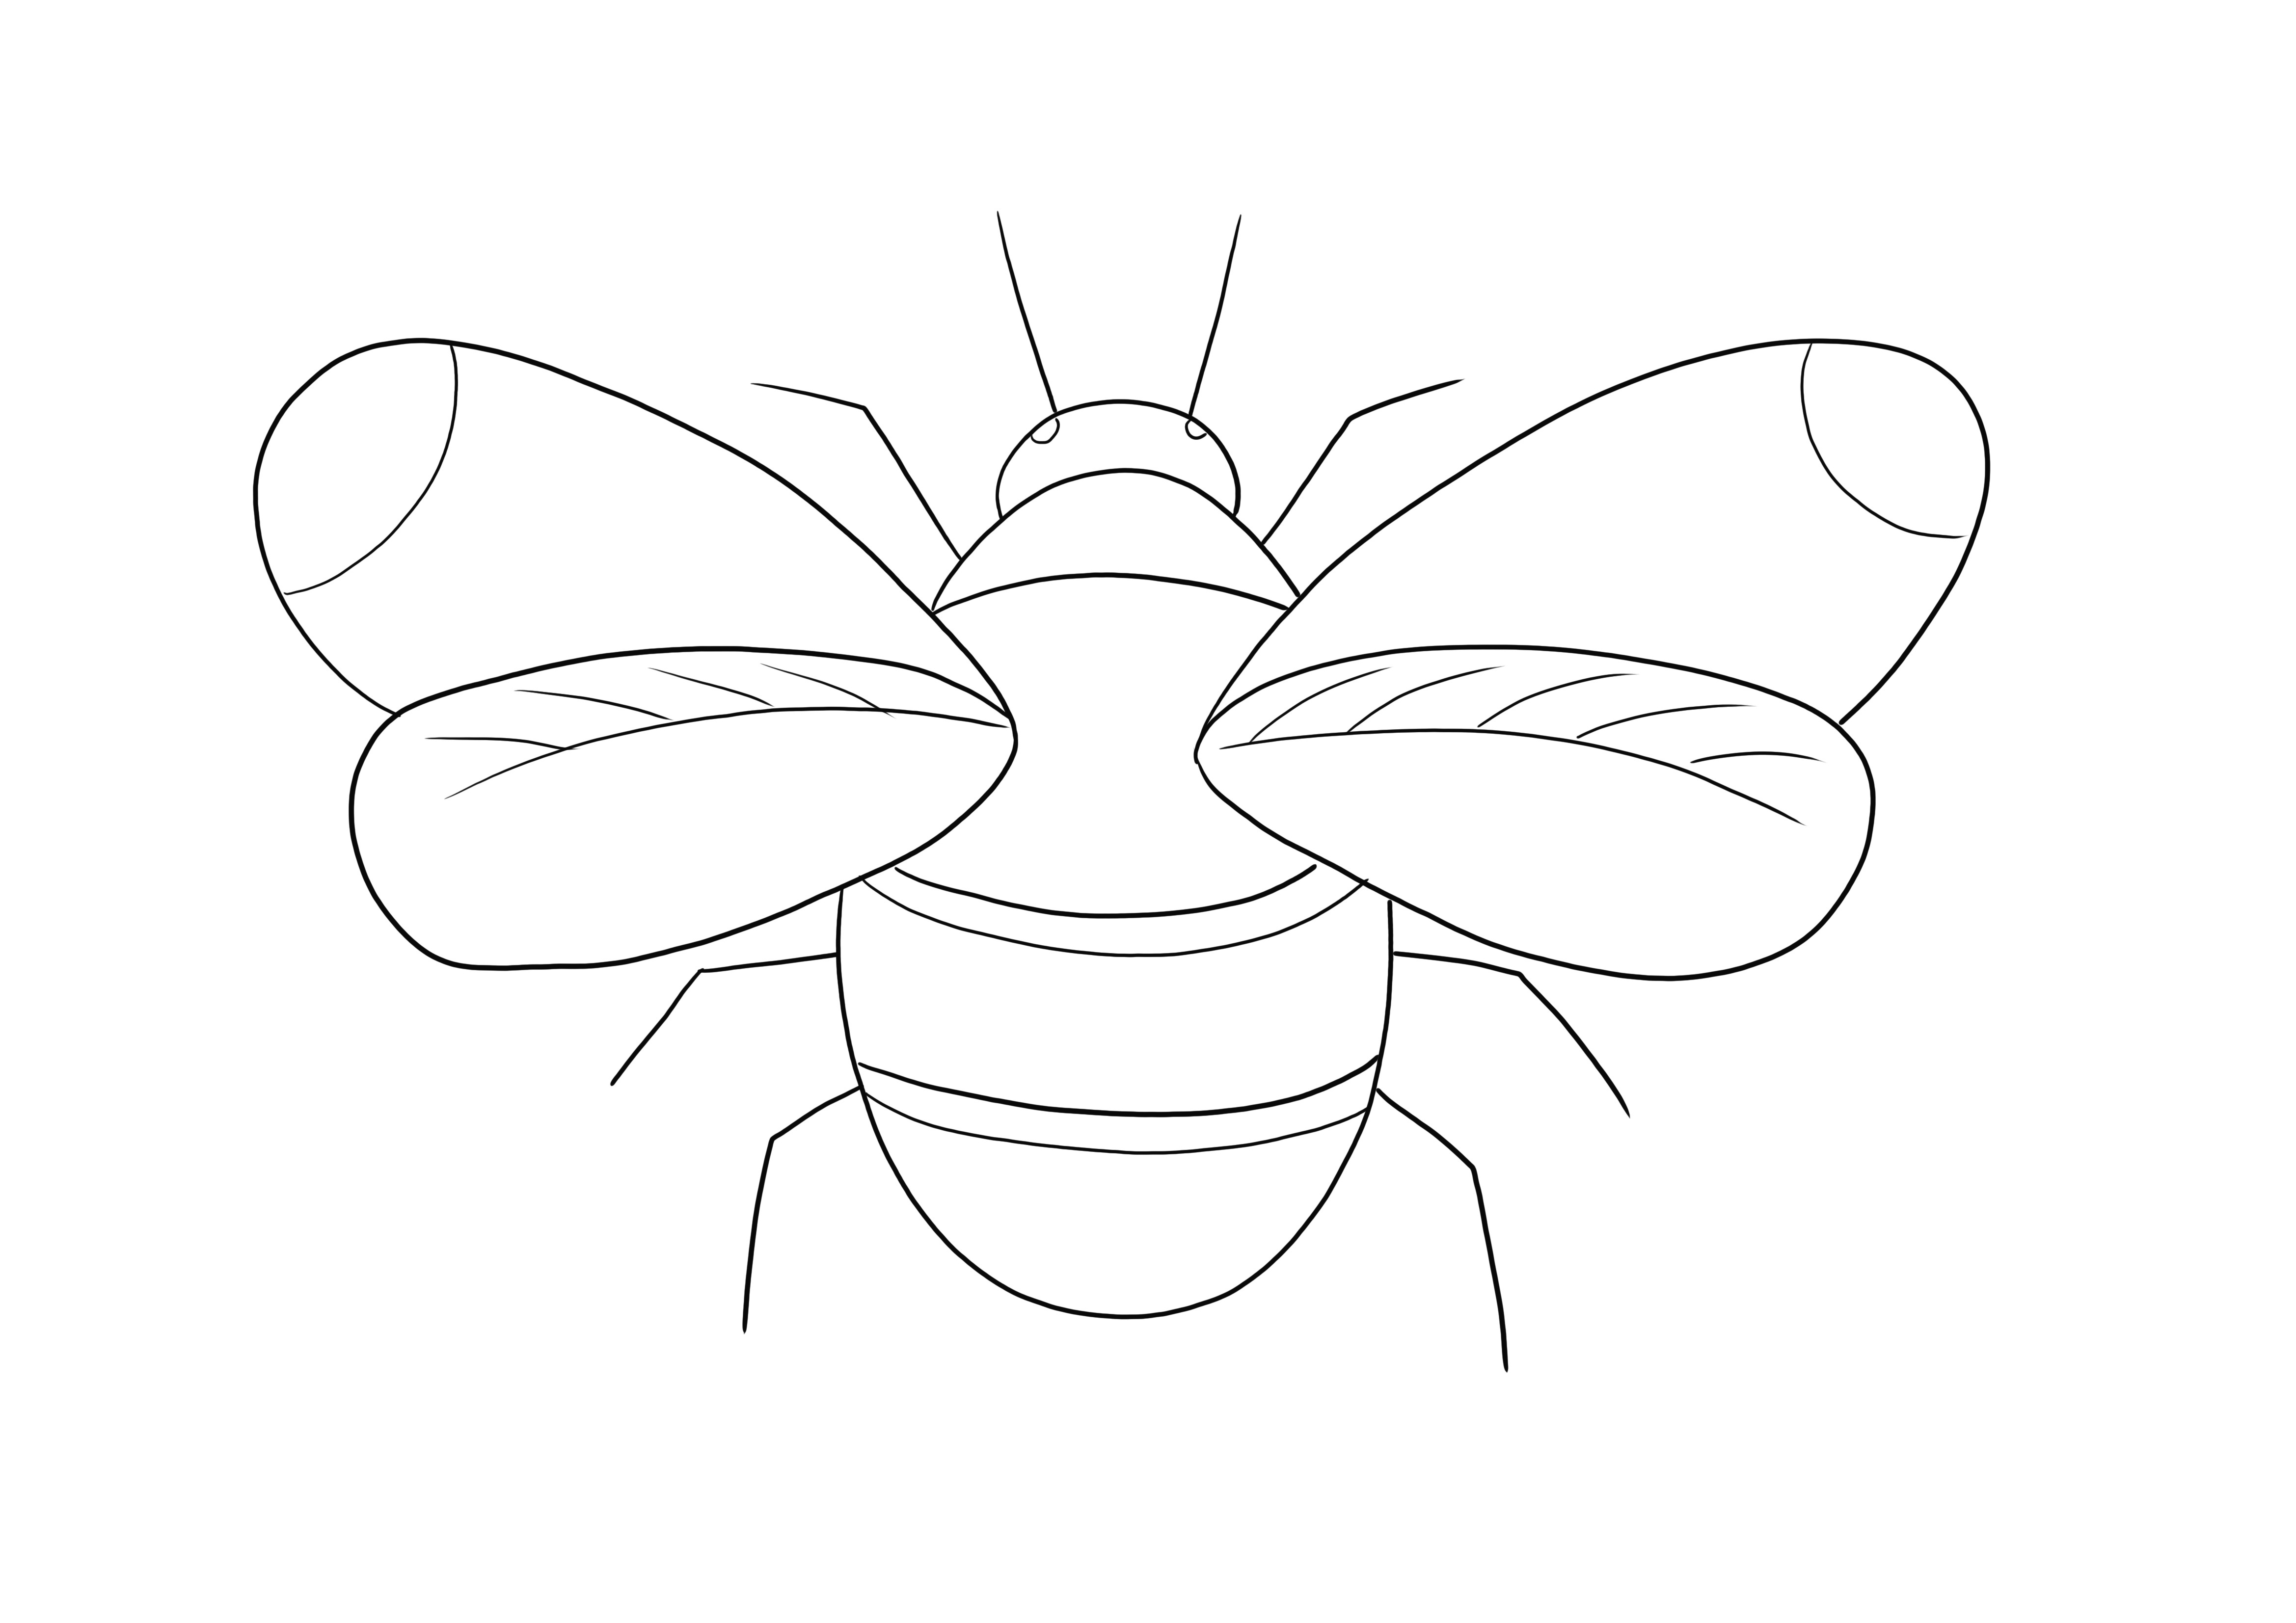 Bumblebee väritysarkki on ladattavissa ilmaiseksi tai tulostettava ja väritettävä